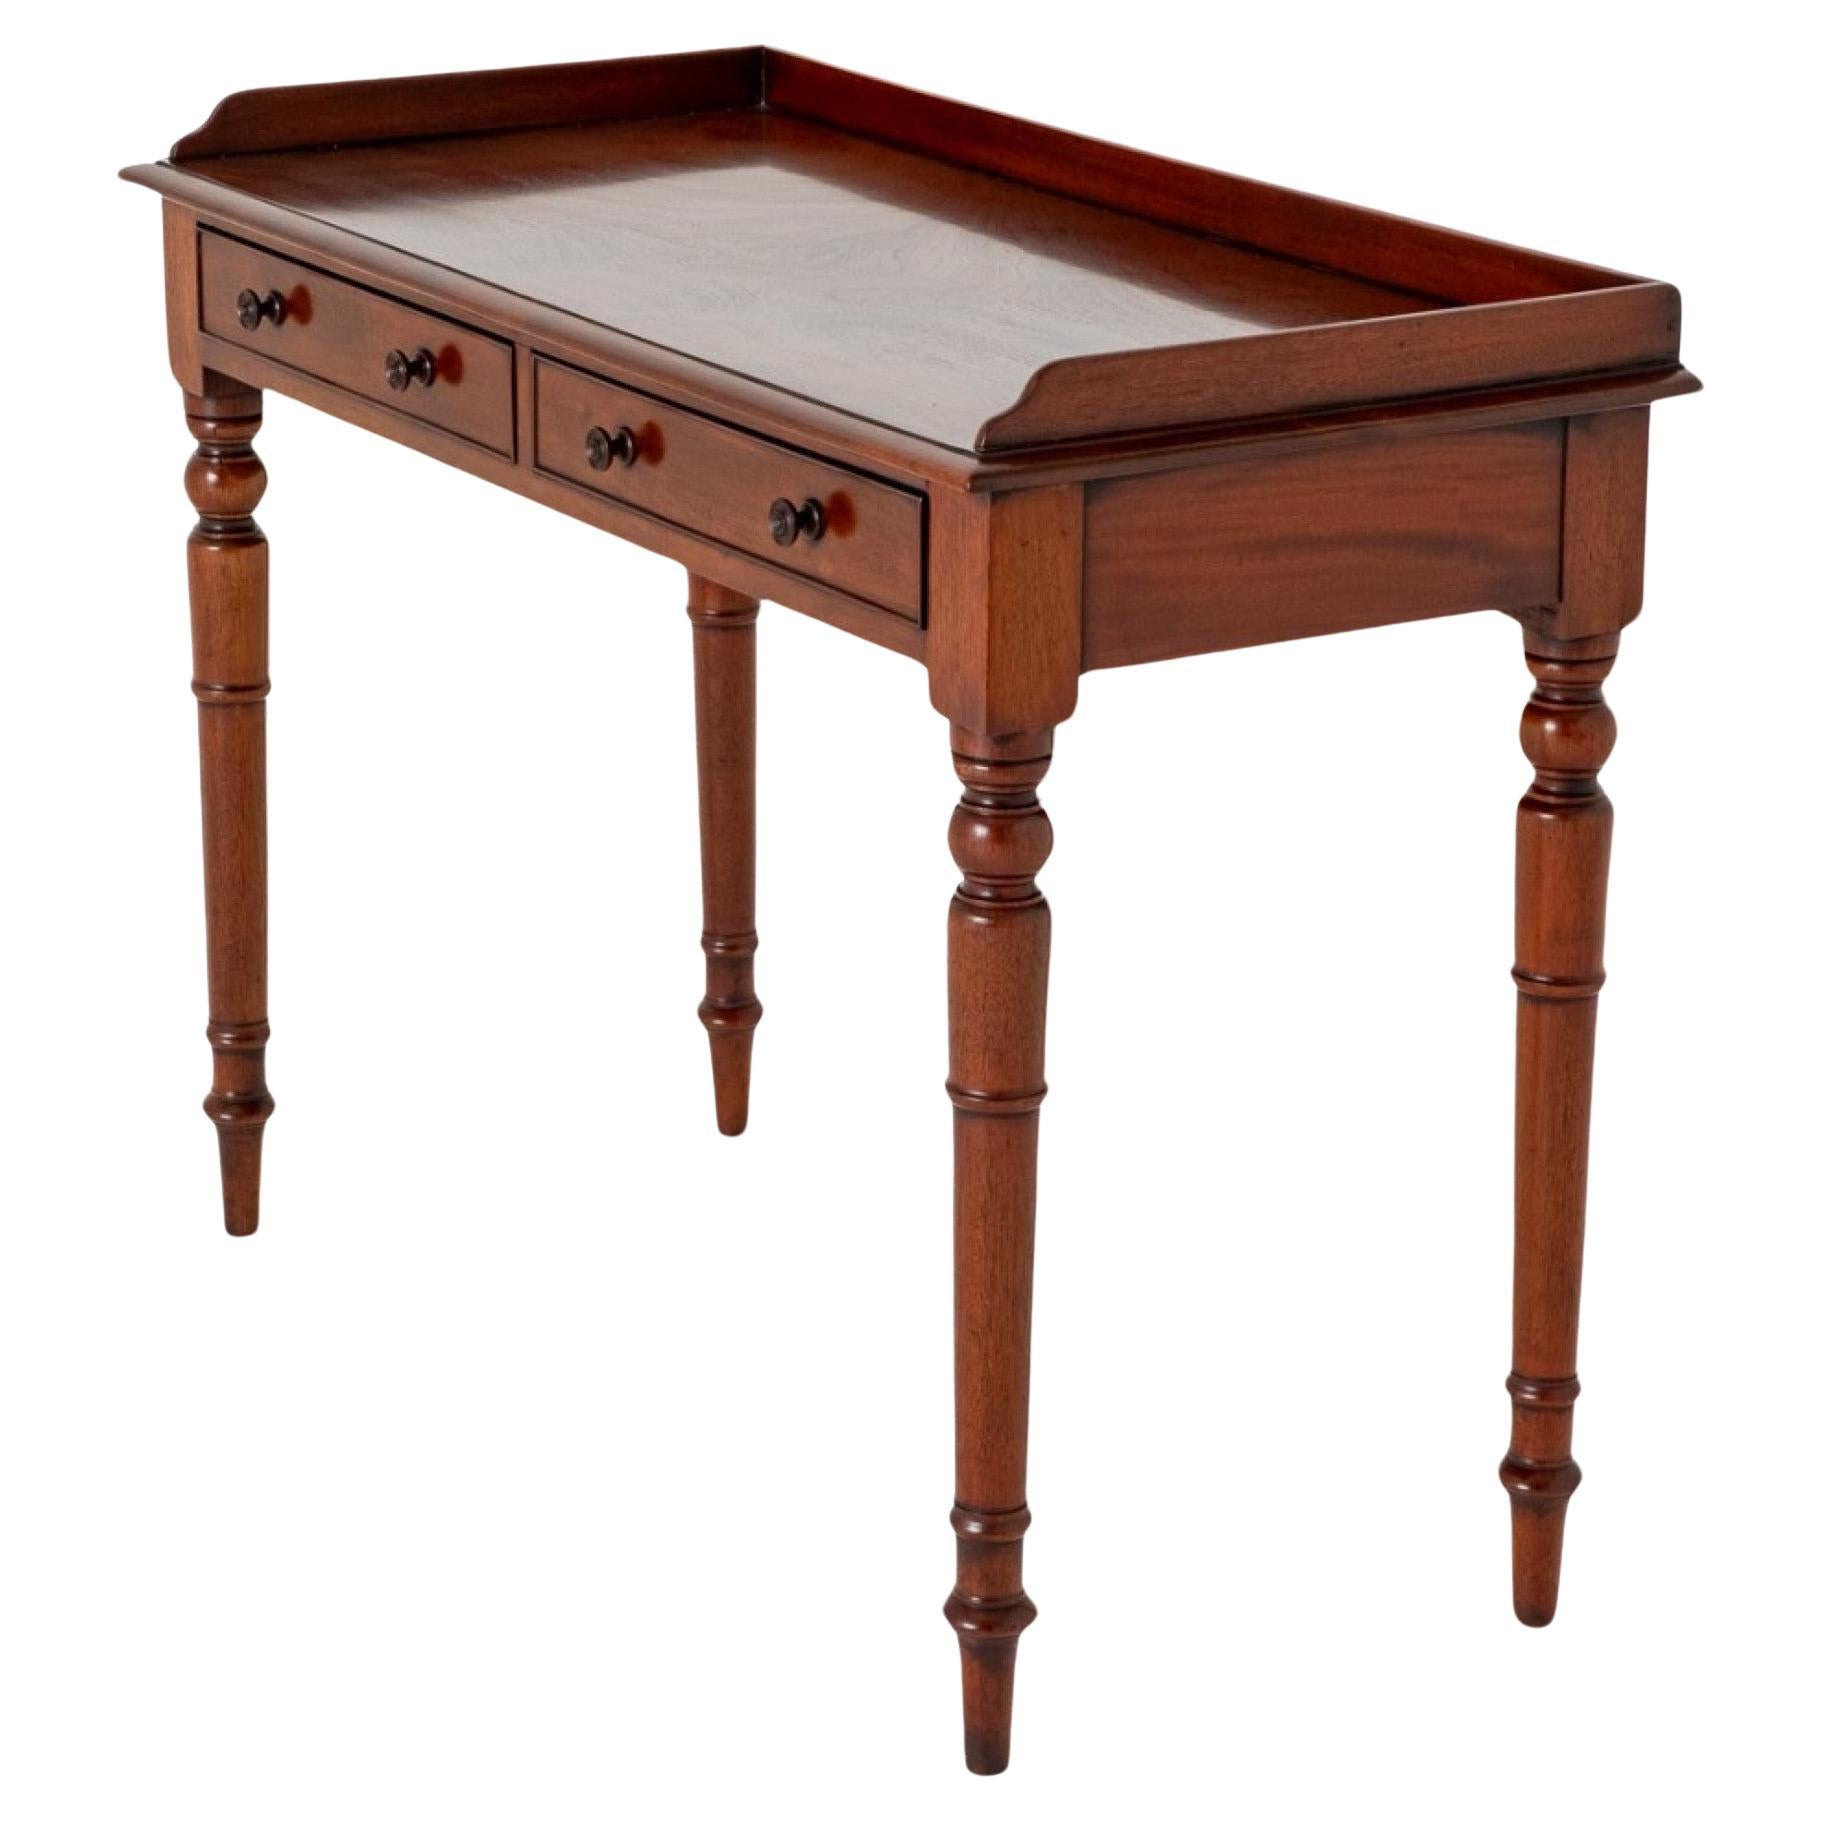 Viktorianisches Tablett Top Tisch Mahagoni Seite 1860